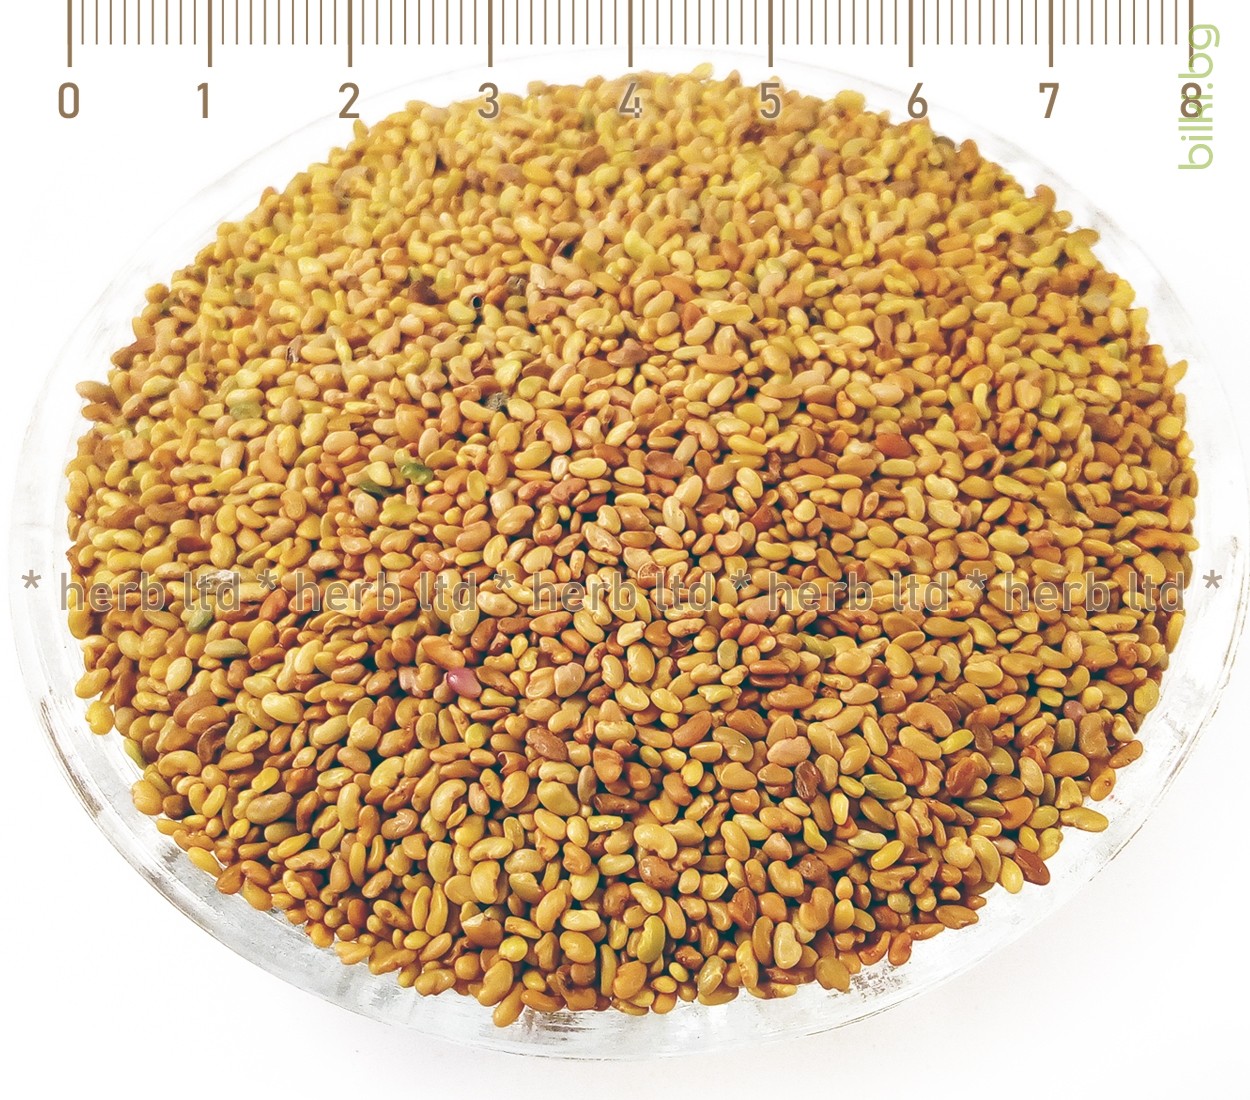  семена за кълнове – Алфалфа Medicago sativa 100 гр | онлайн .